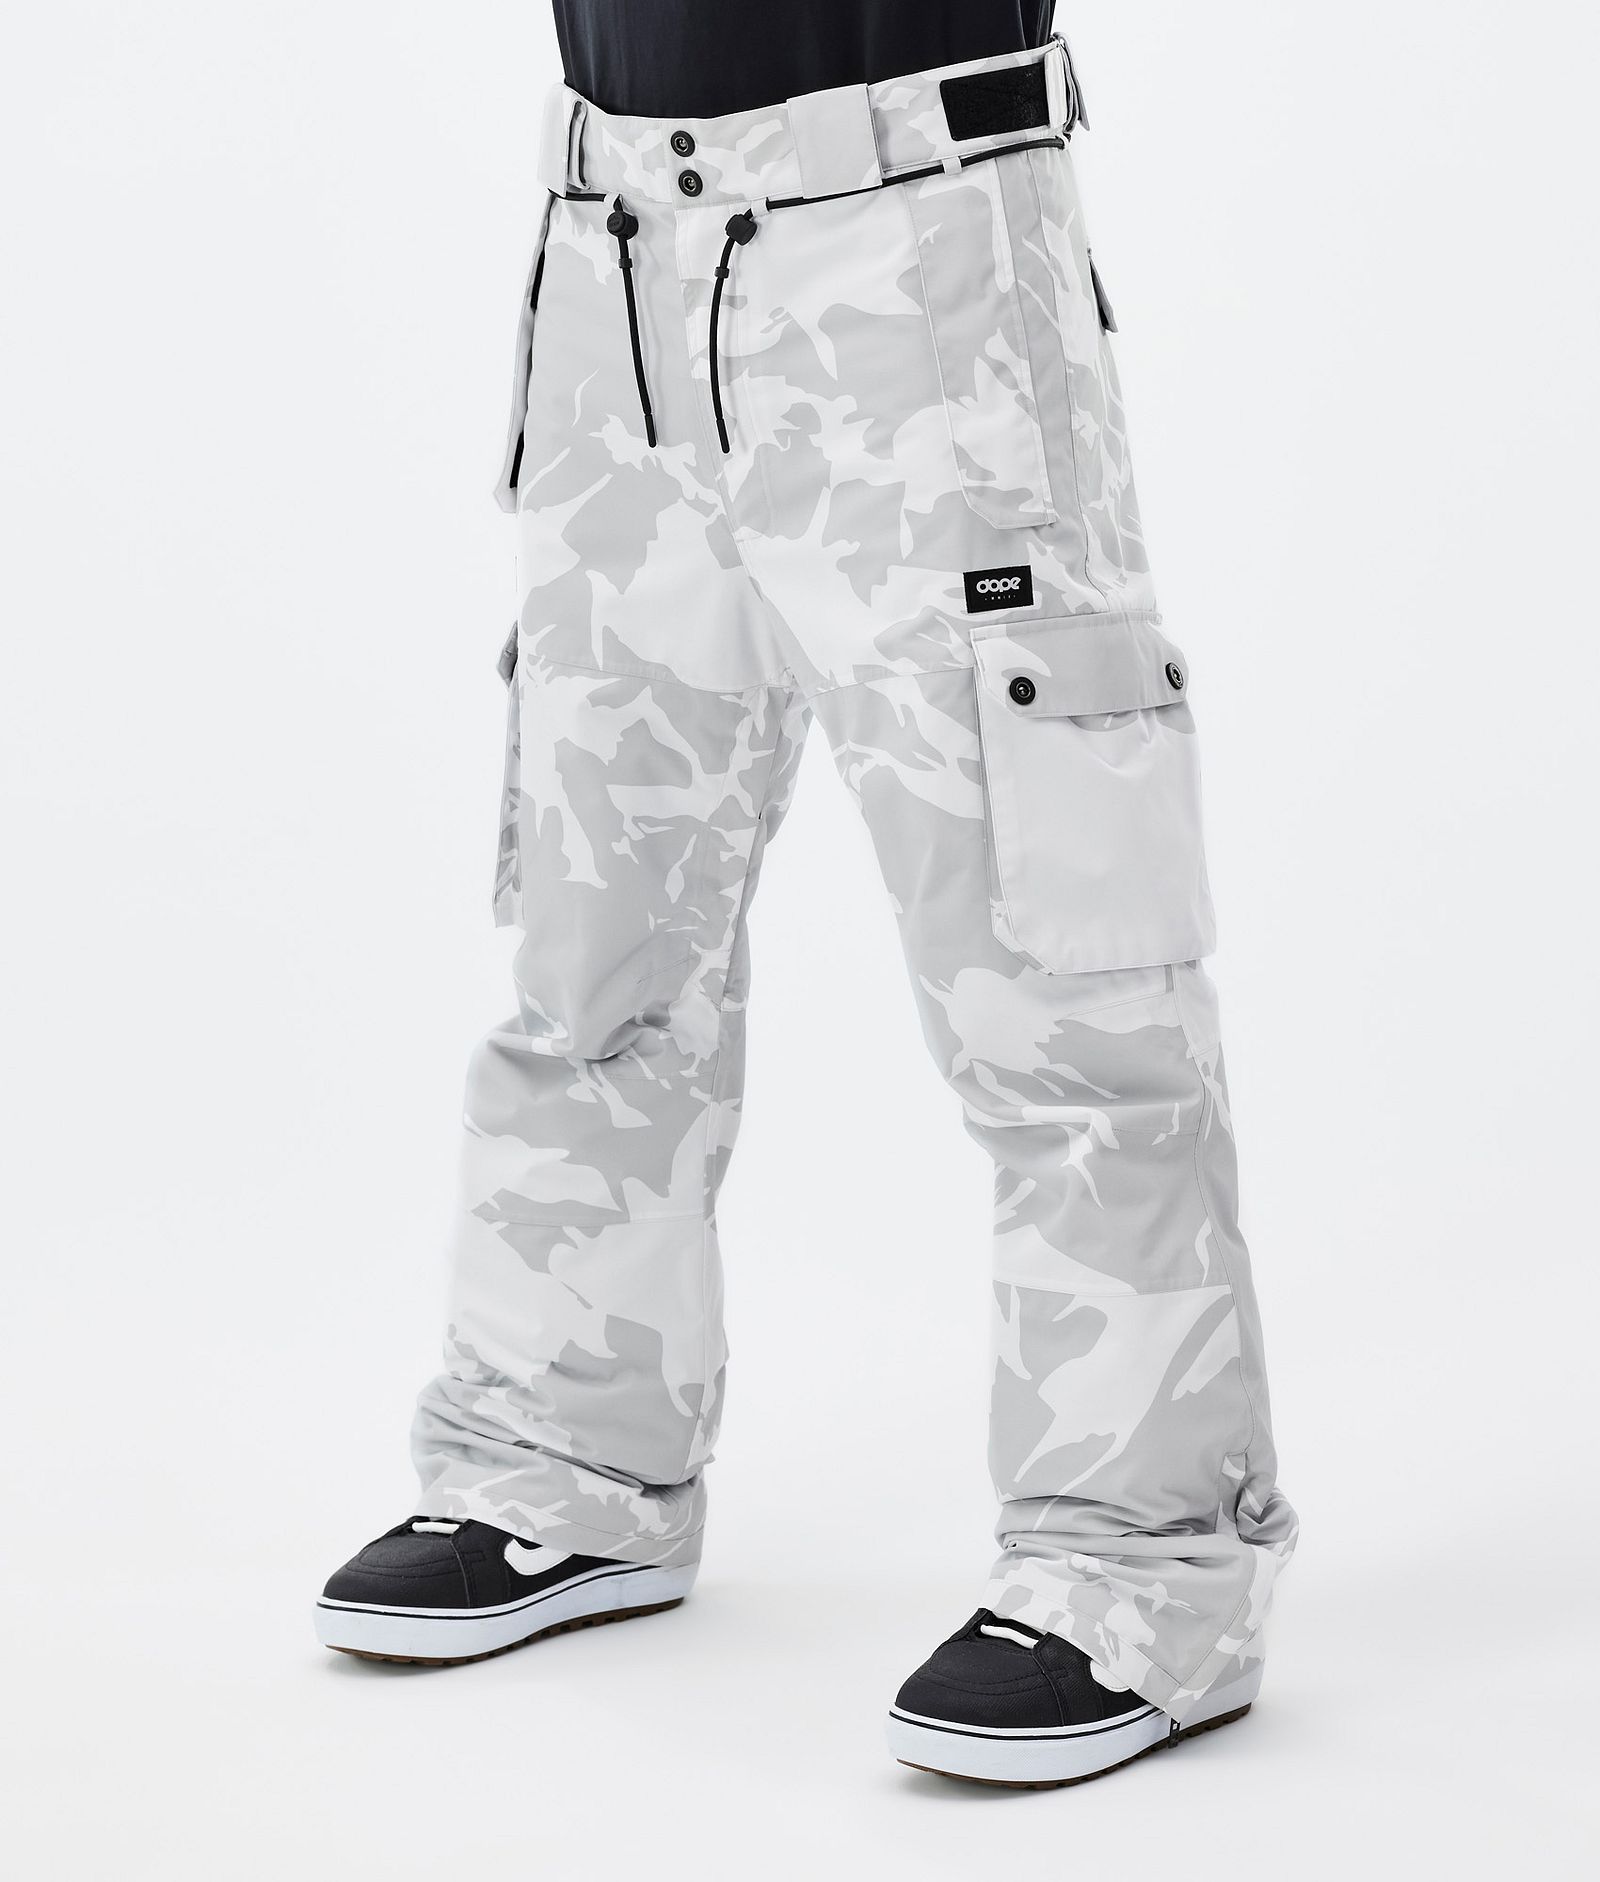 Avis Dope Iconic M 2020 Homme : Pantalon de snowboard, test